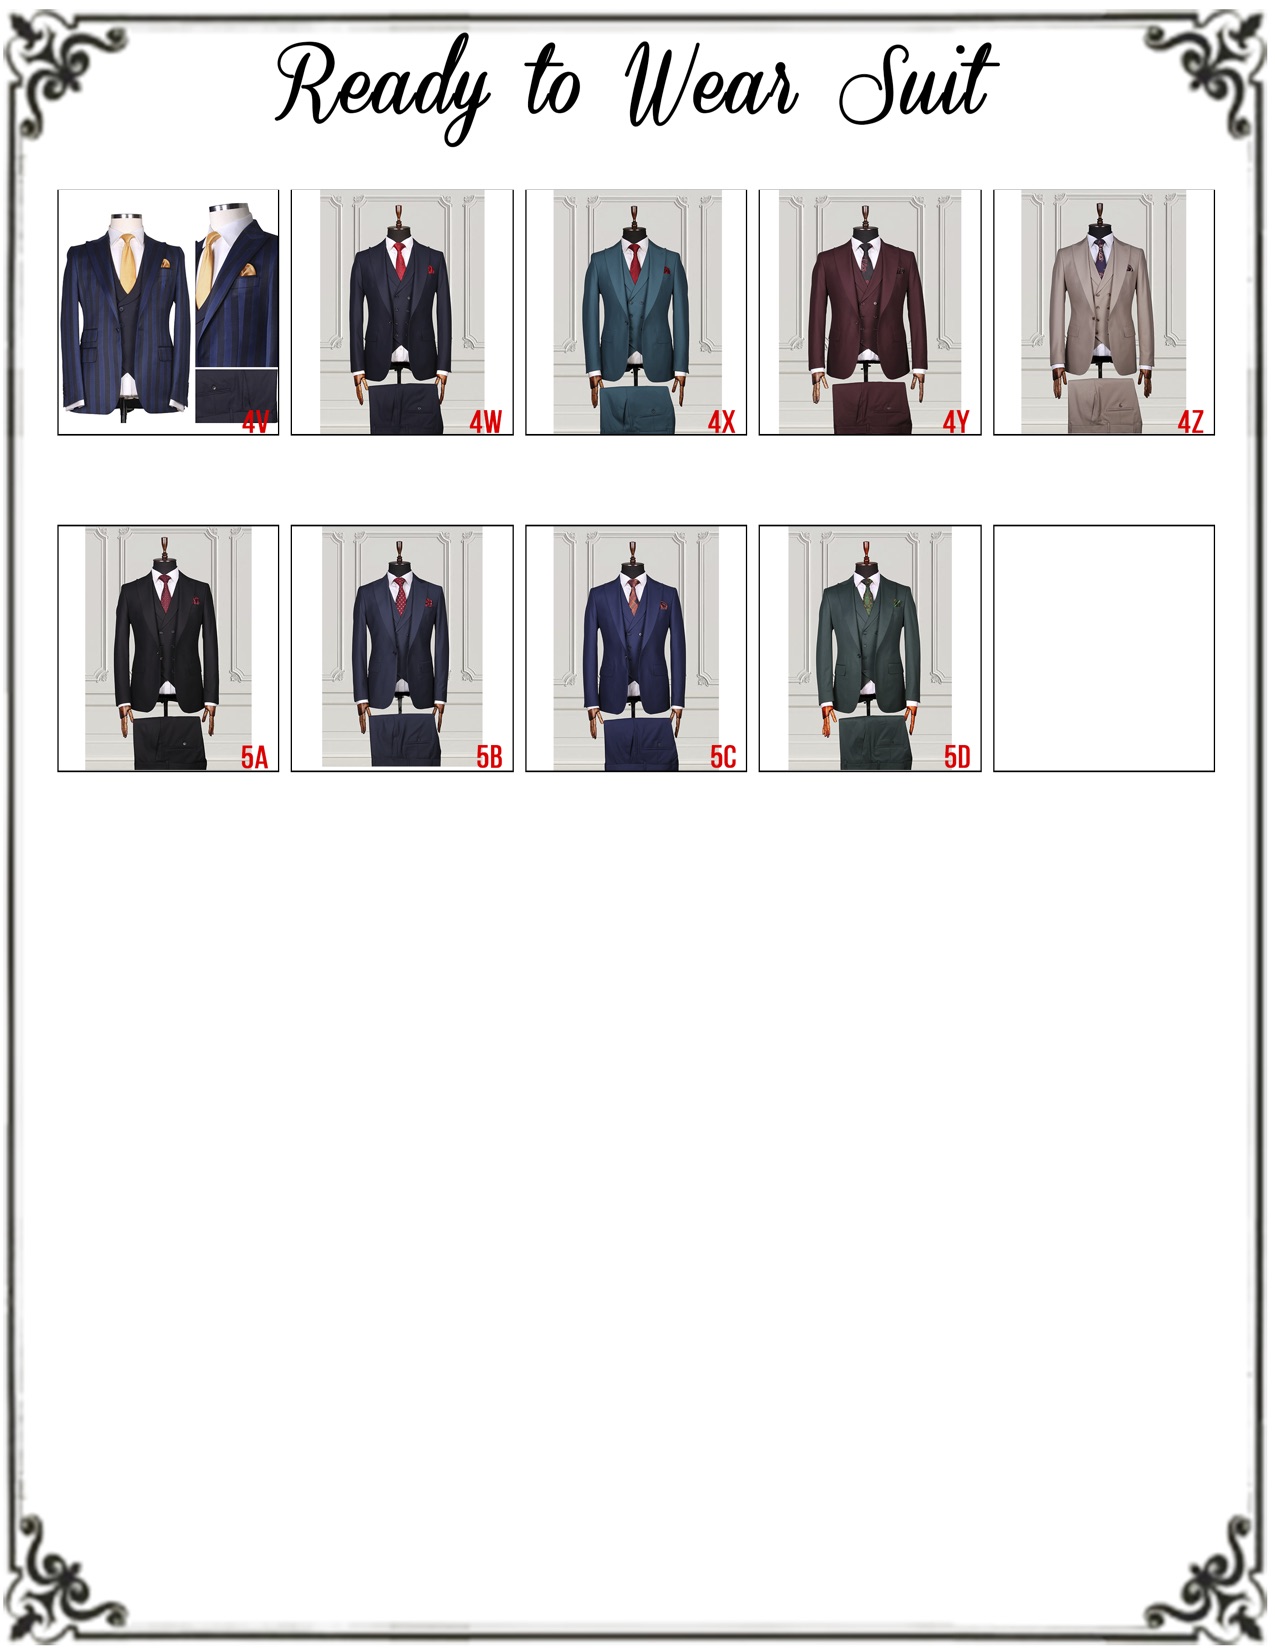 ready-to-wear-suit-options-jpg-6.jpg